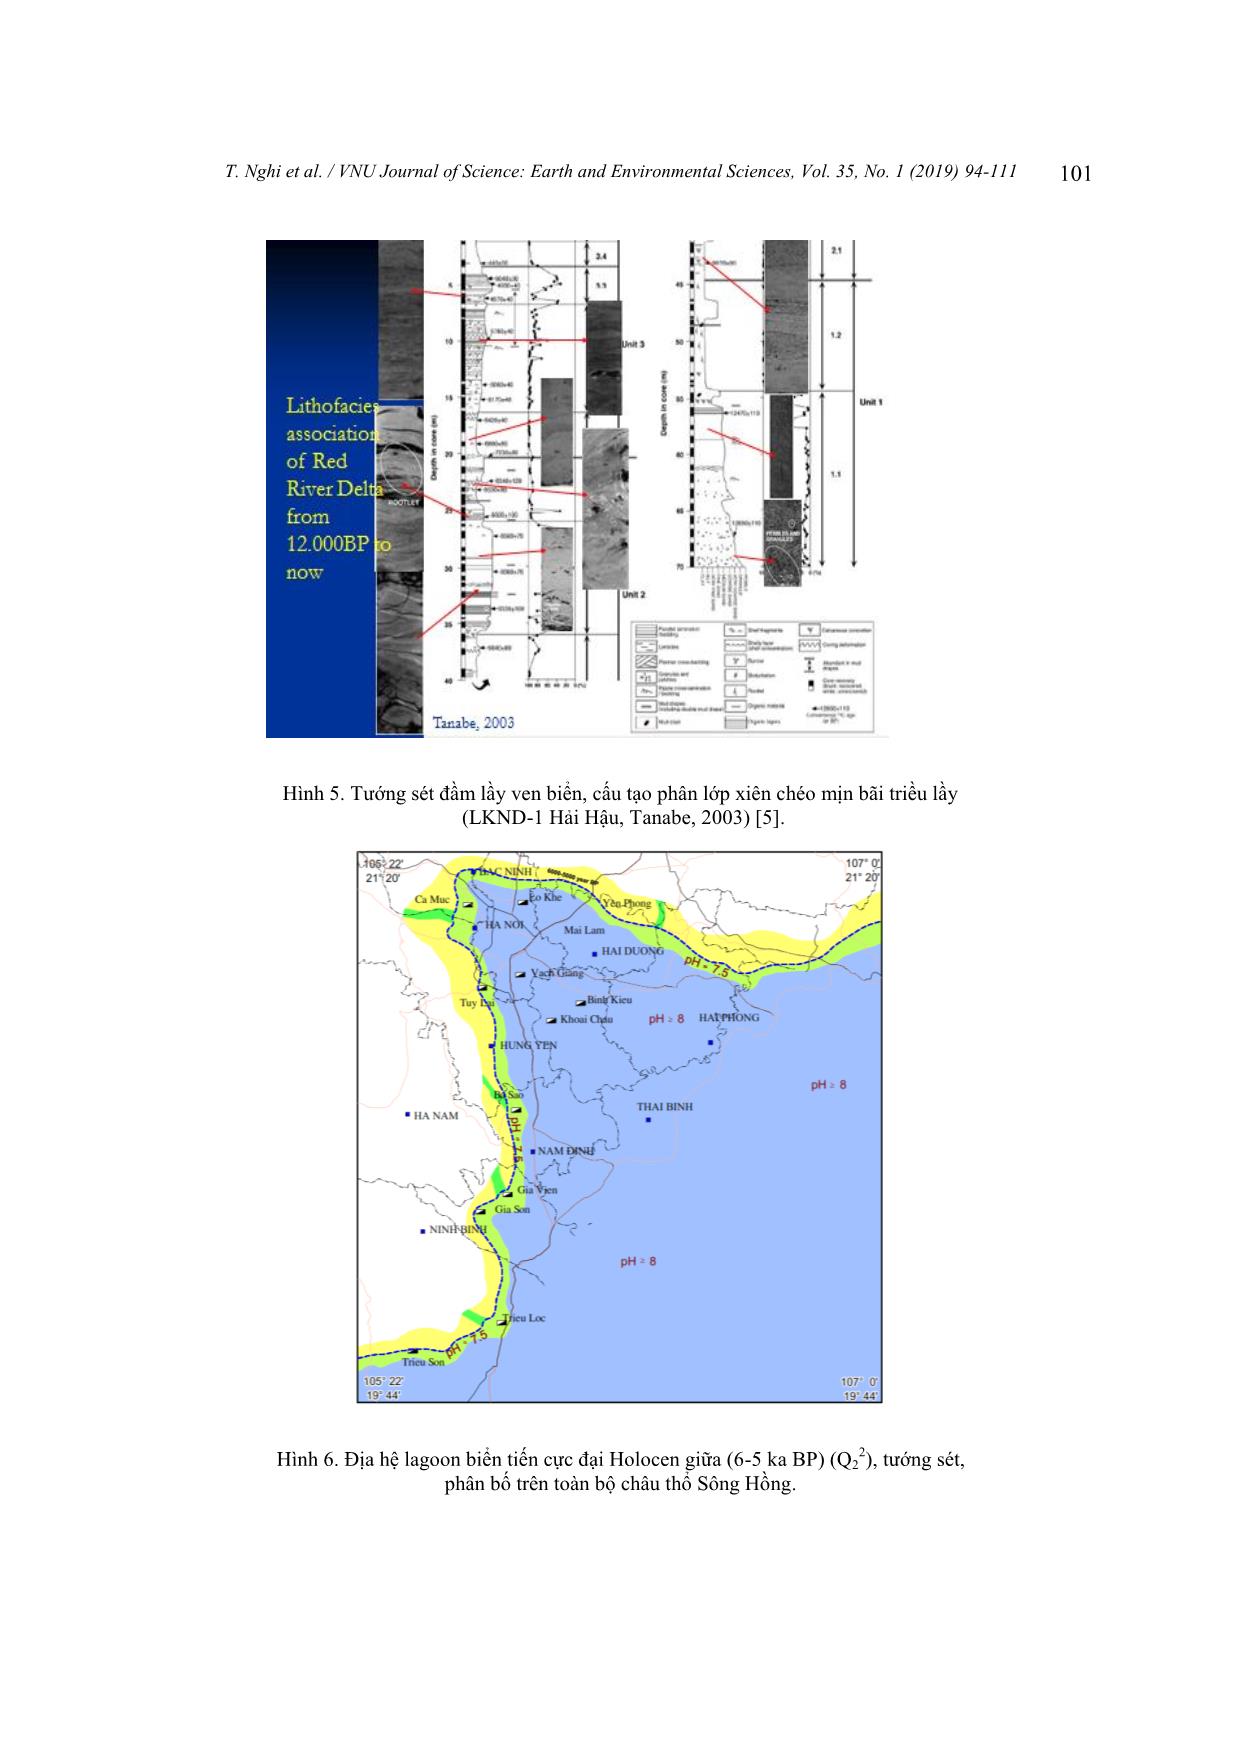 Biến động các địa hệ trong Holocen ở khu vực đới bờ châu thổ sông Hồng trang 8